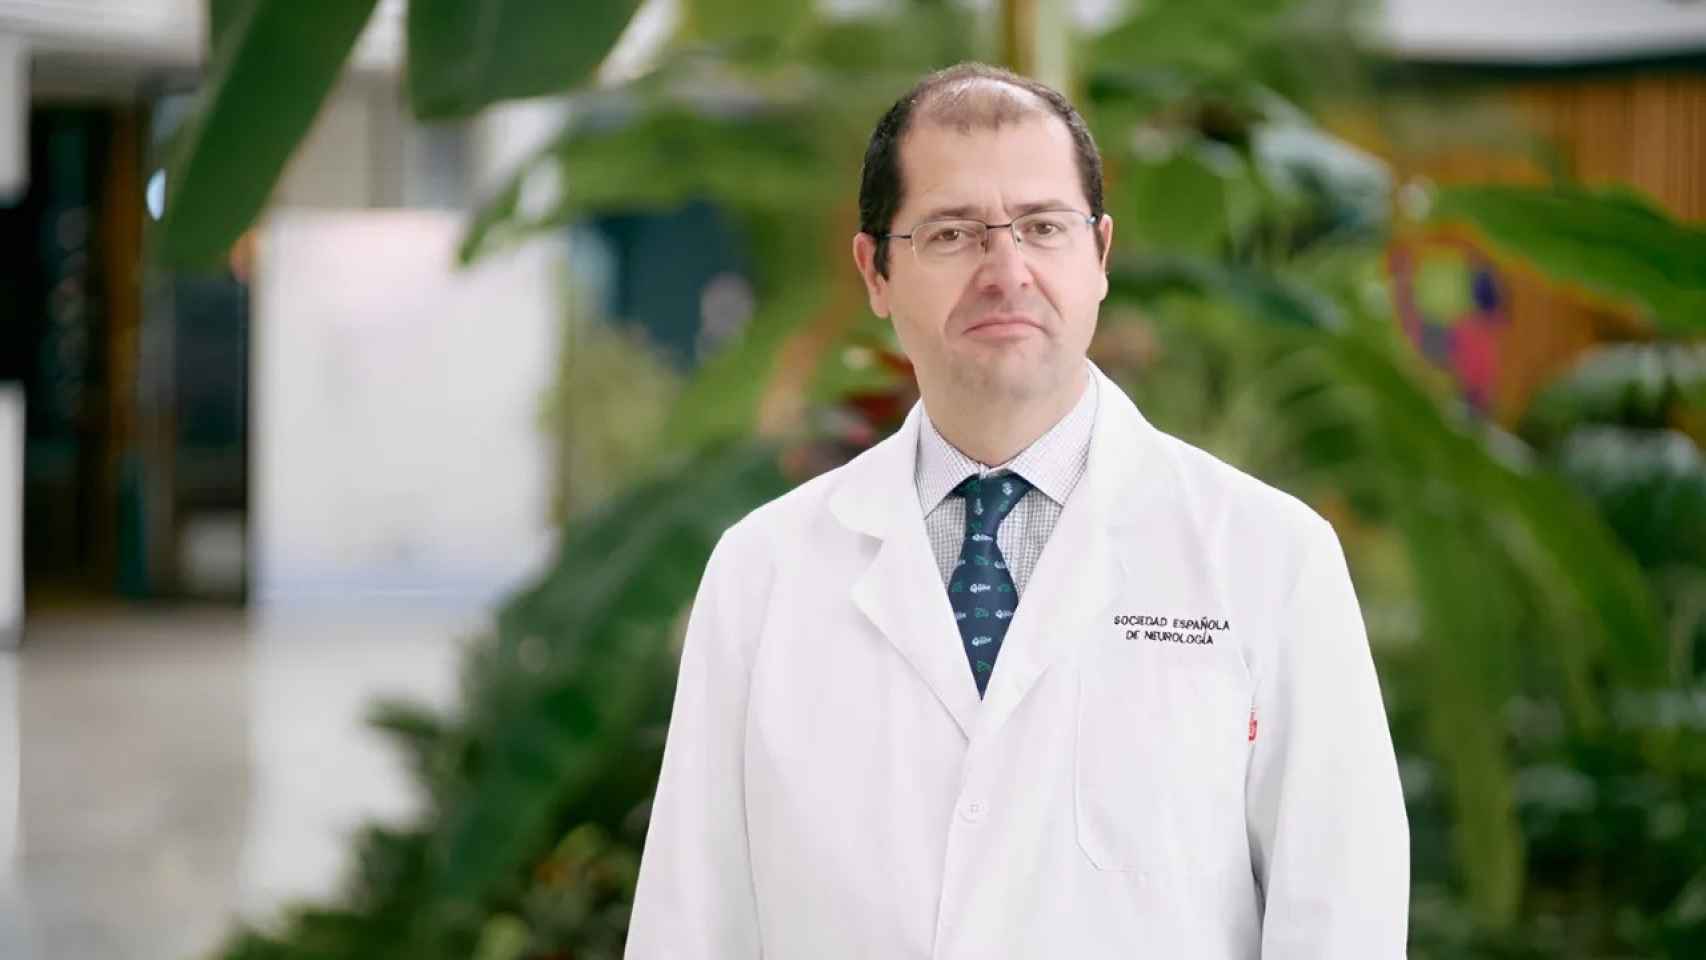 Pablo Irimia, portavoz de la Sociedad Española de Neurología, ha tratado a pacientes con neuralgia del trigémino.